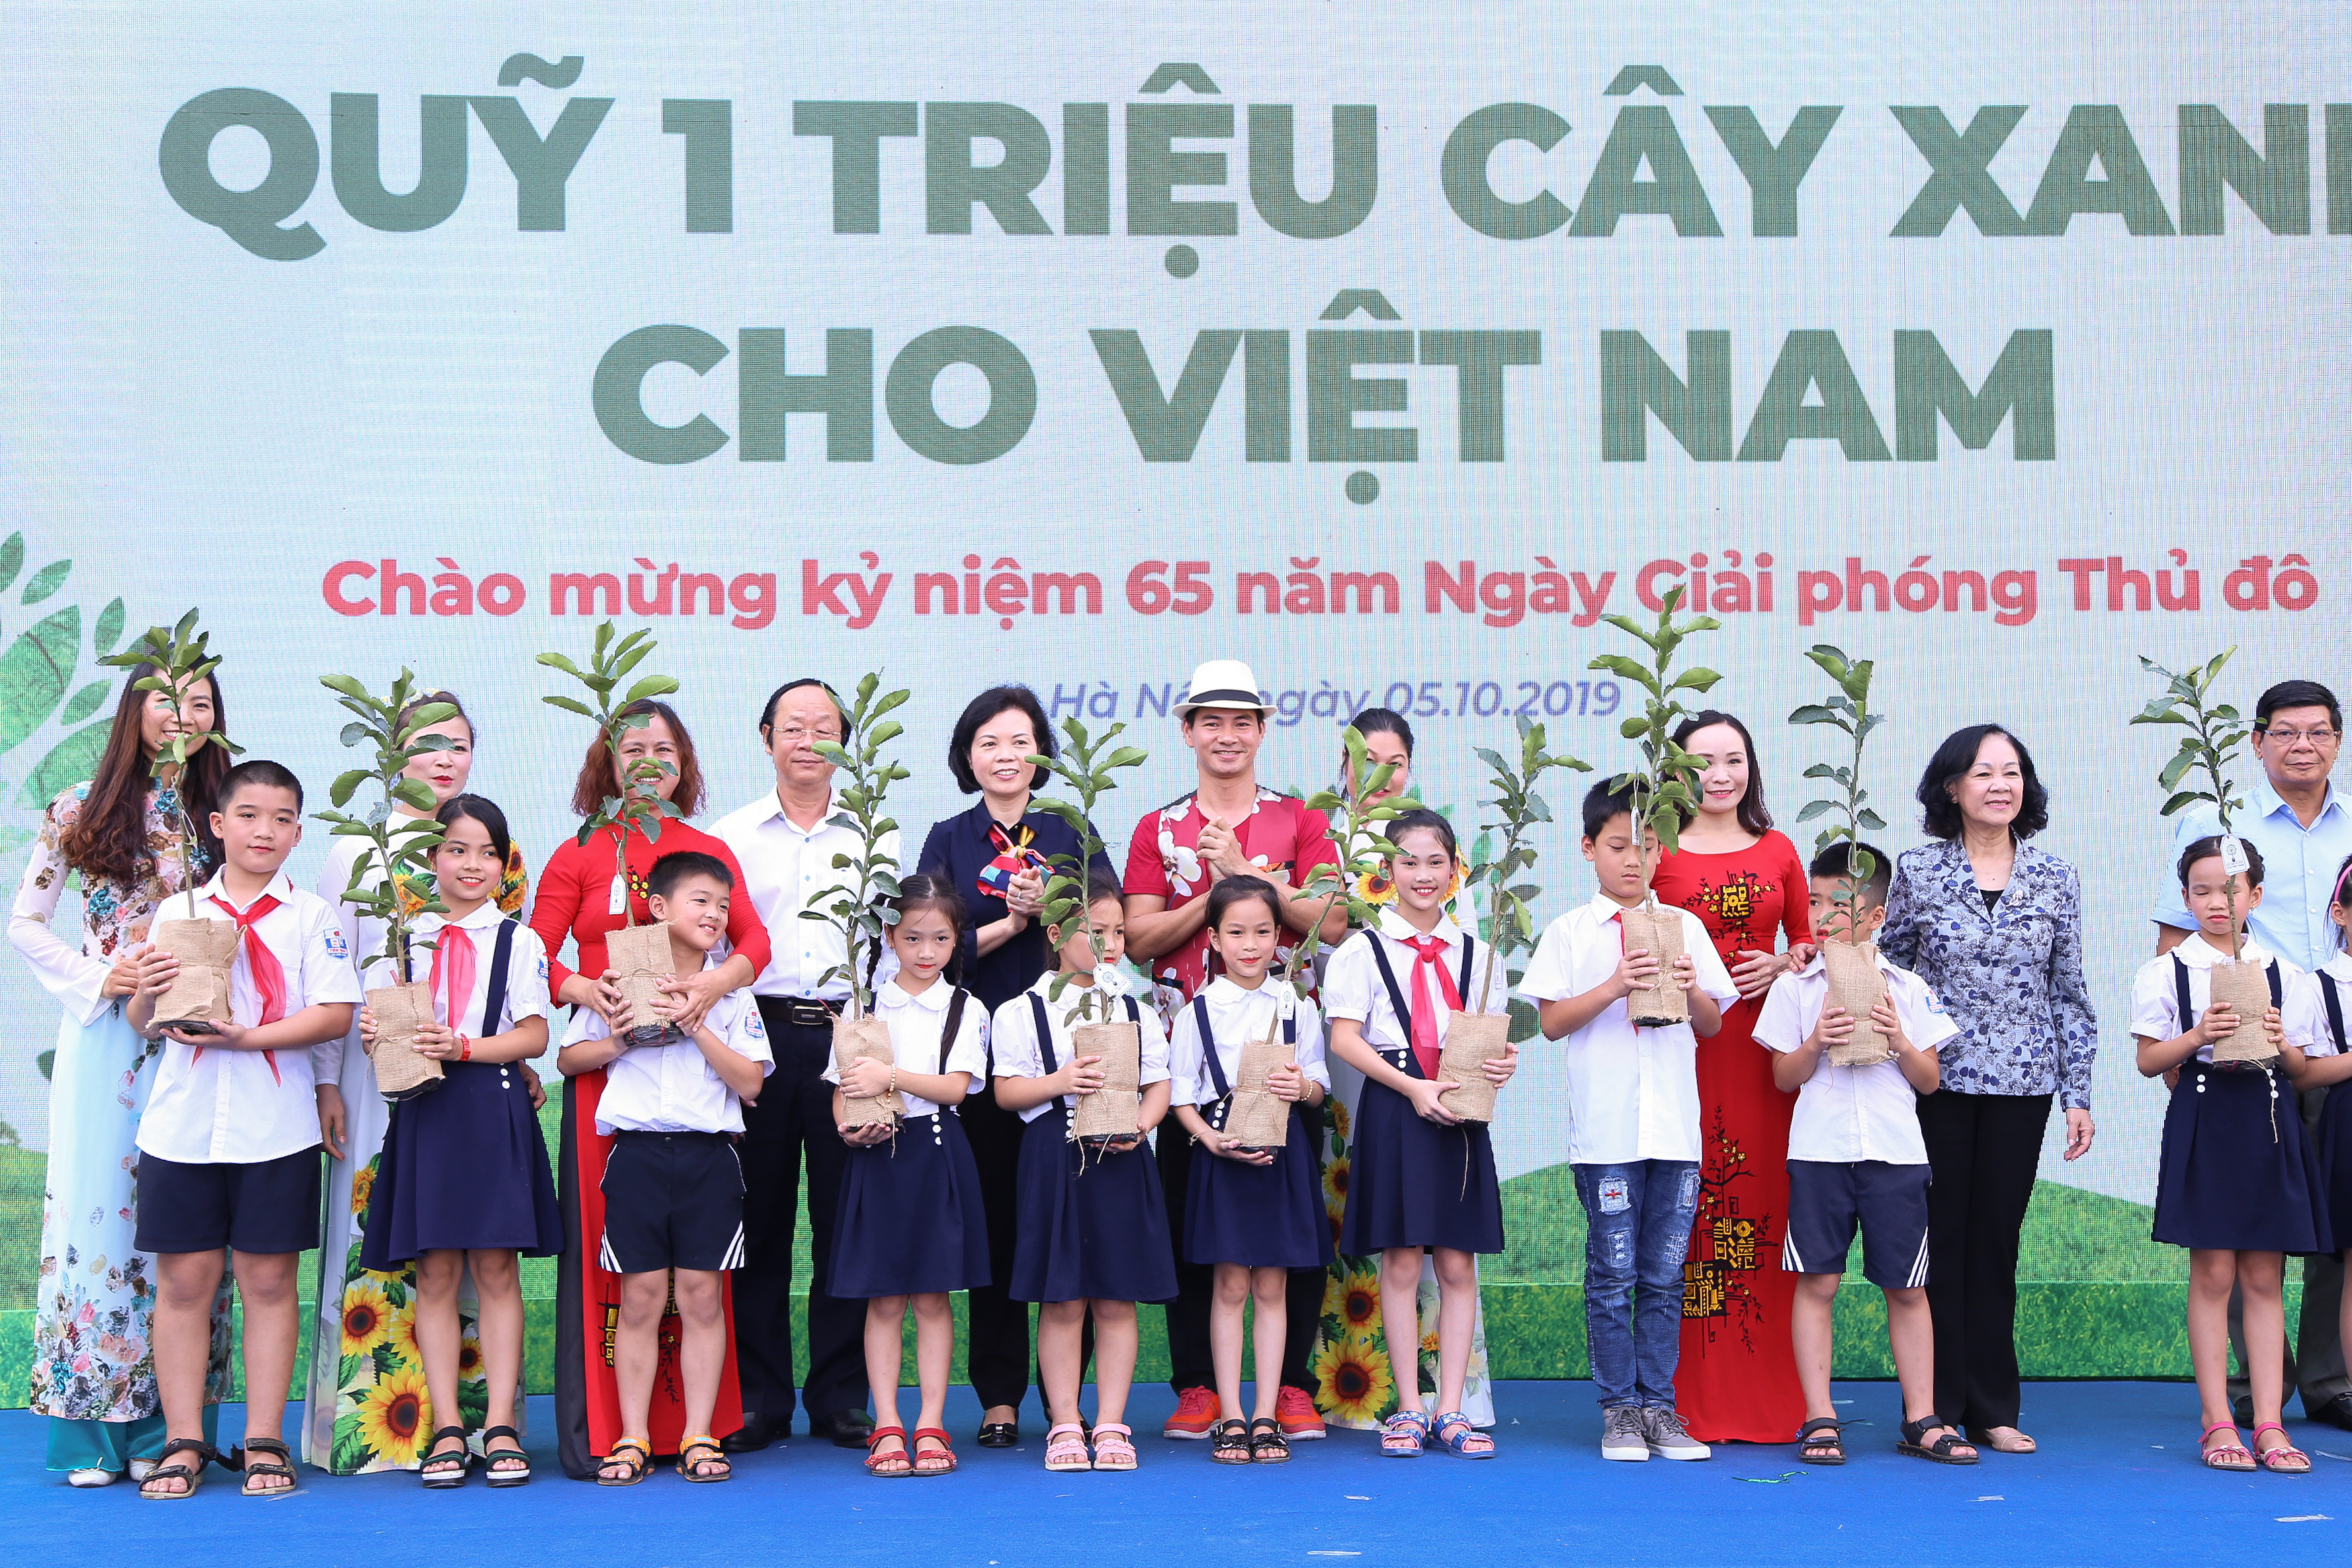 Bà Trương Thị Mai cùng các đại biểu trao gửi thông điệp từ Quỹ 1 triệu cây xanh cho Việt Nam đến các em học sinh, mong các em biết yêu thiên nhiên và bảo vệ môi trường.